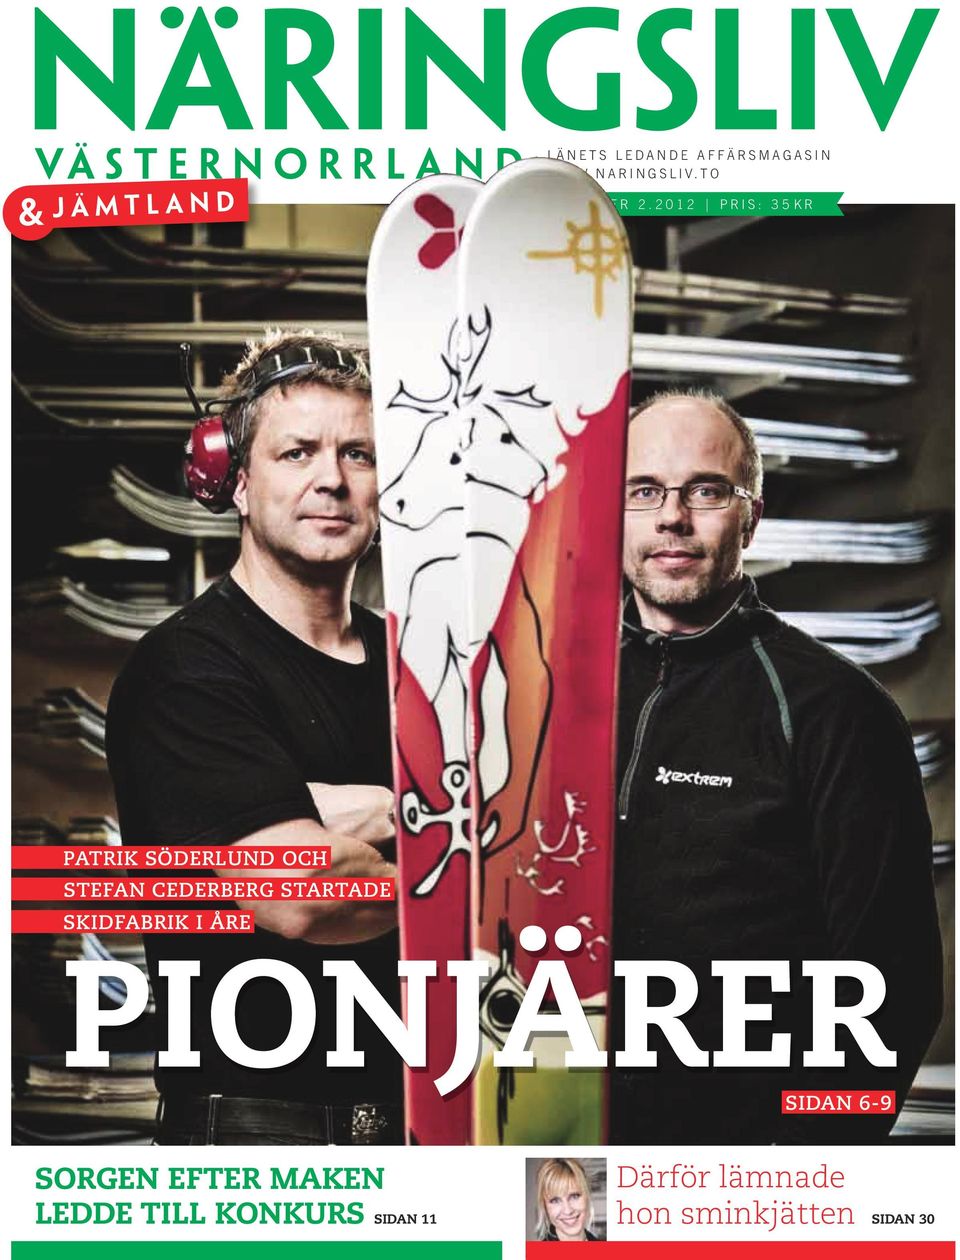 startade skidfabrik i Åre PIONJÄRER Sidan 6-9 Sorgen efter